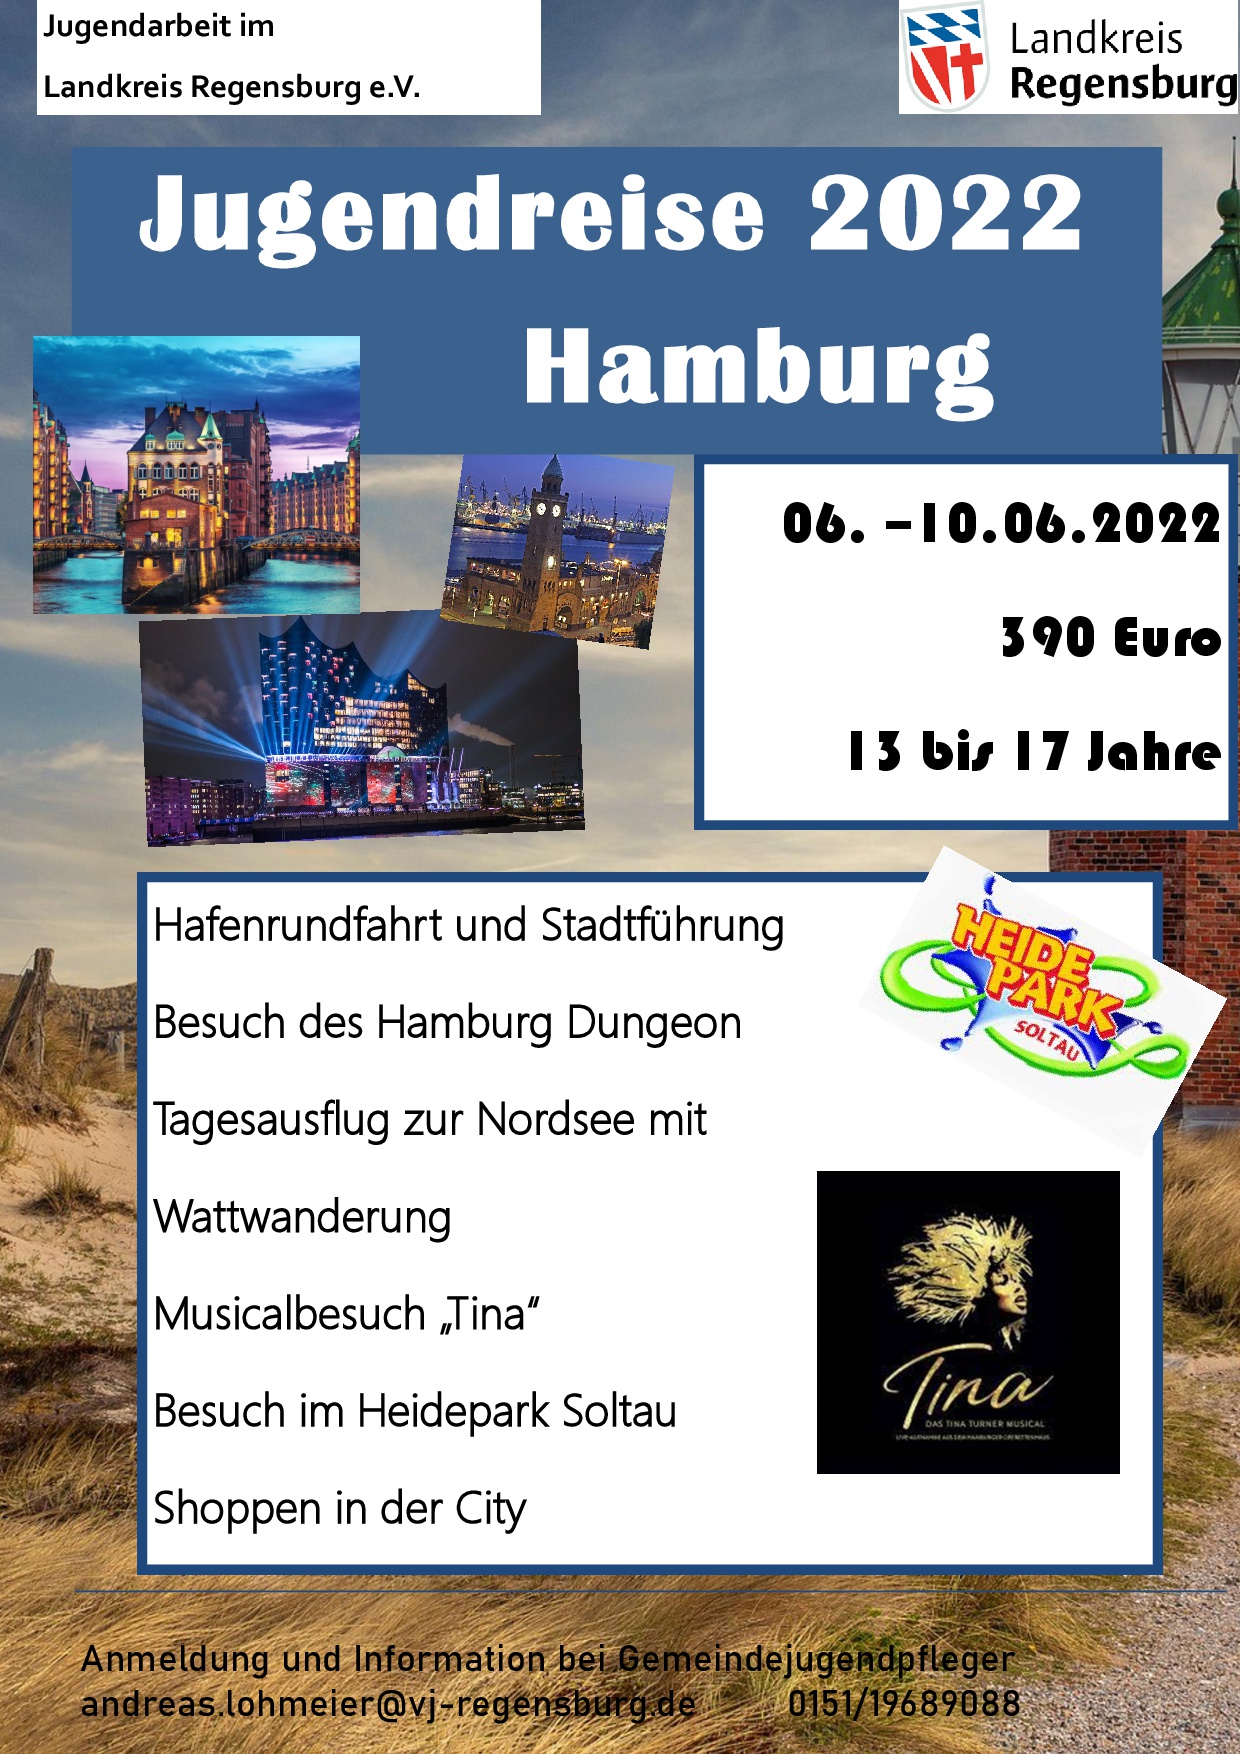 Jugendreise nach Hamburg vom 06. bis 10.06.2022